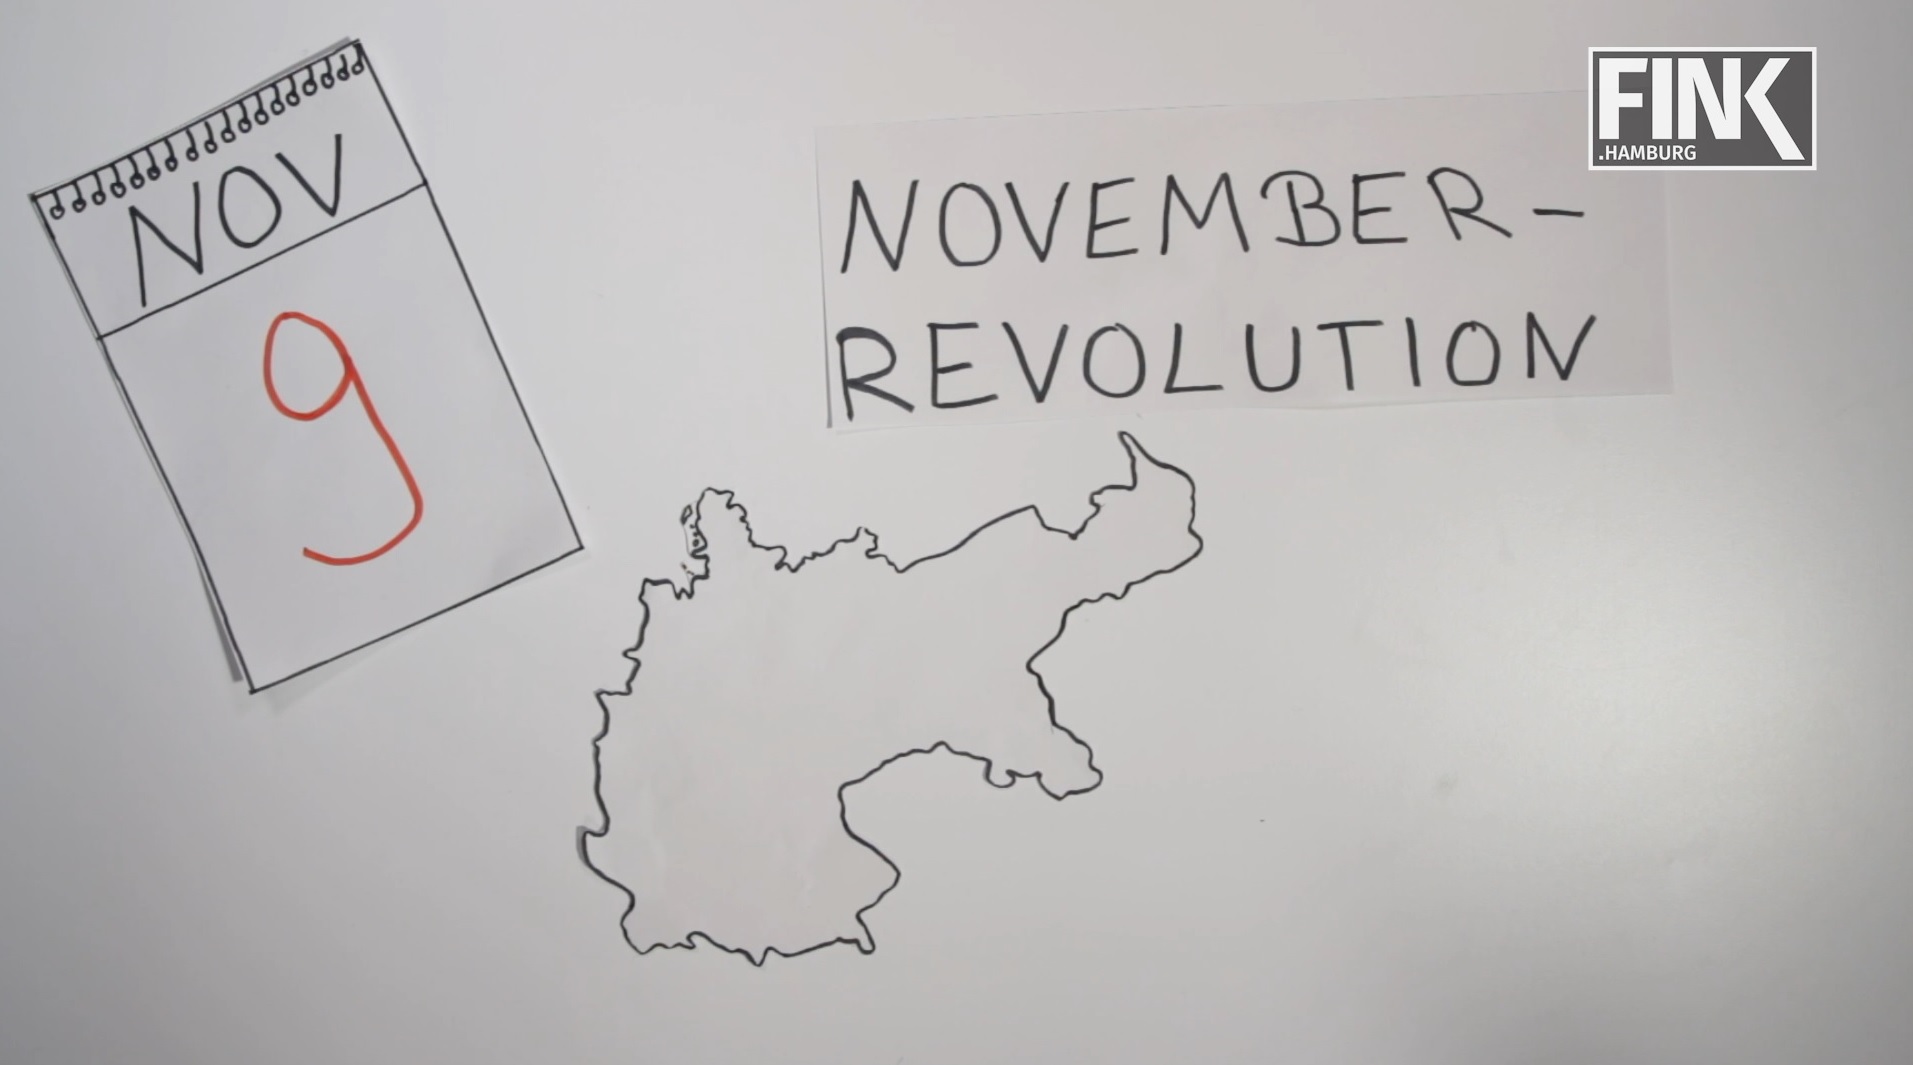 Novemberrevolution